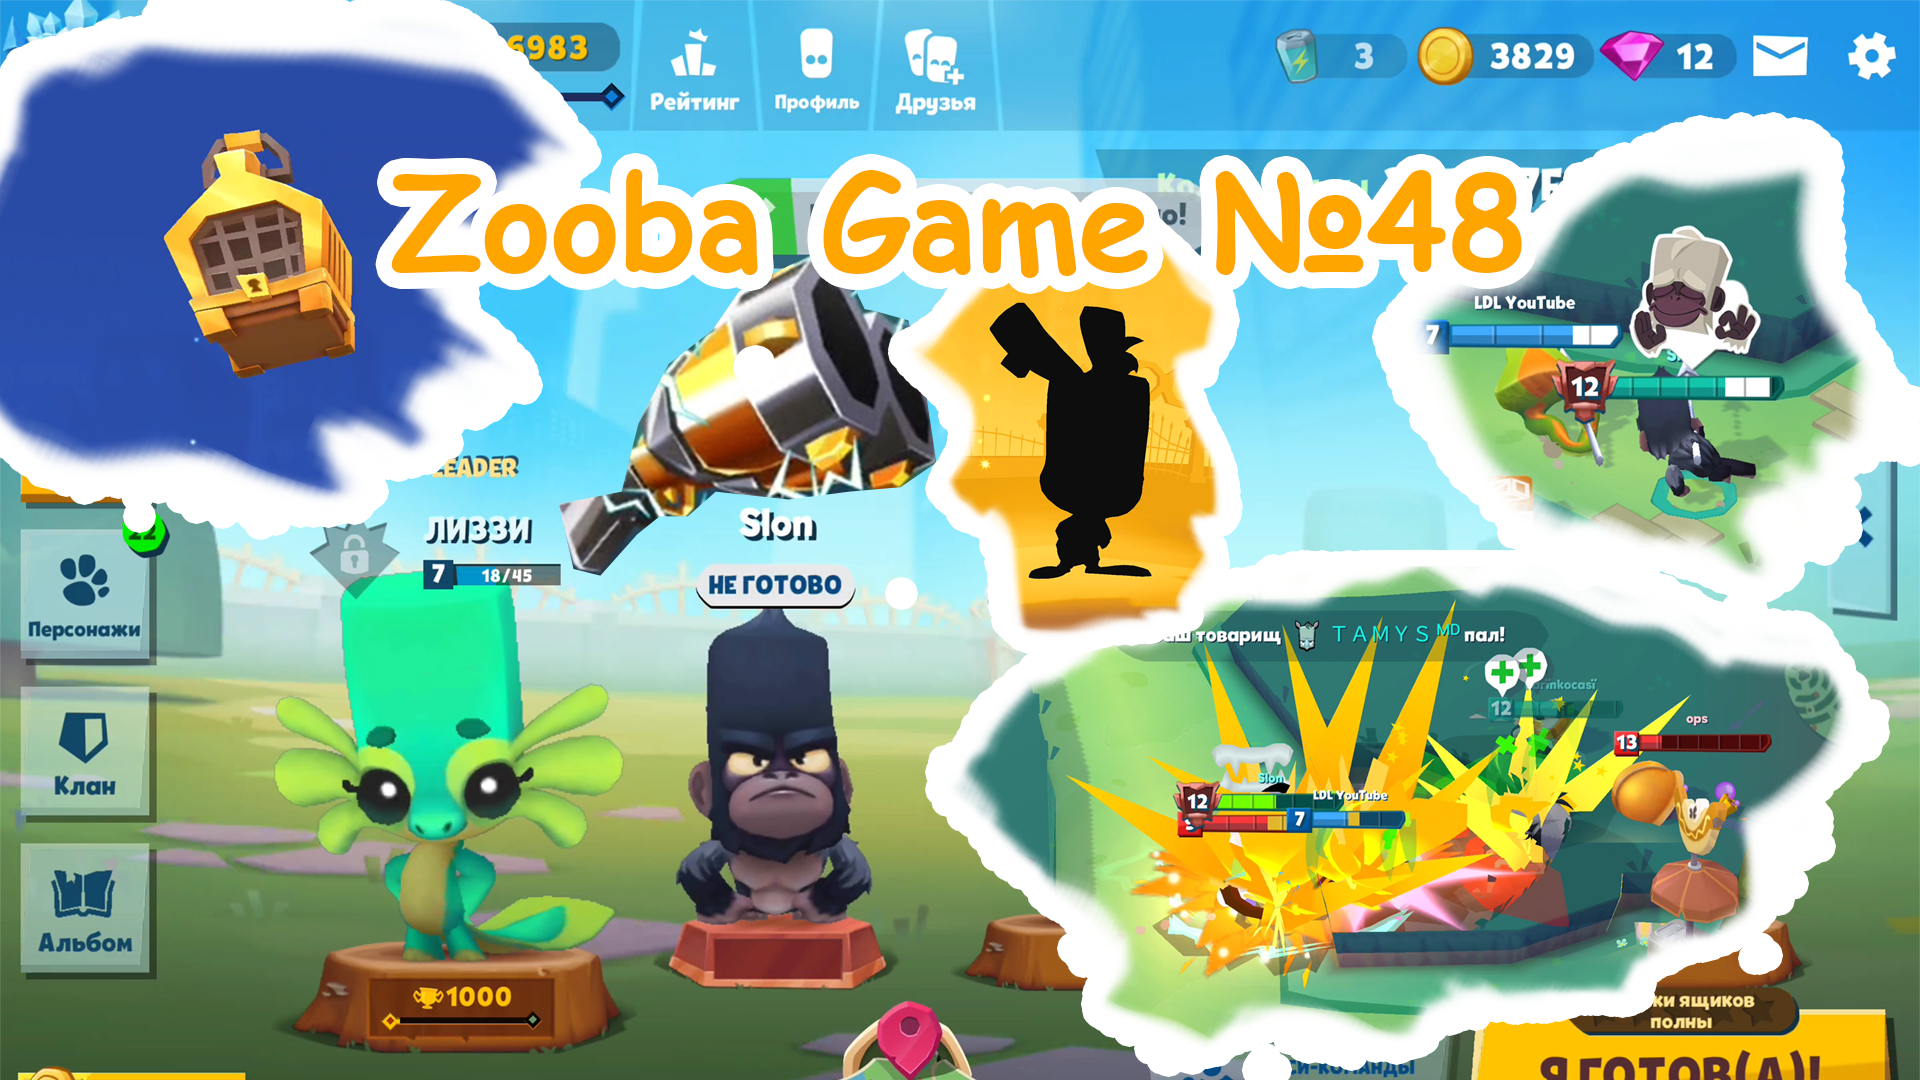 Zooba Game #48 #zooba